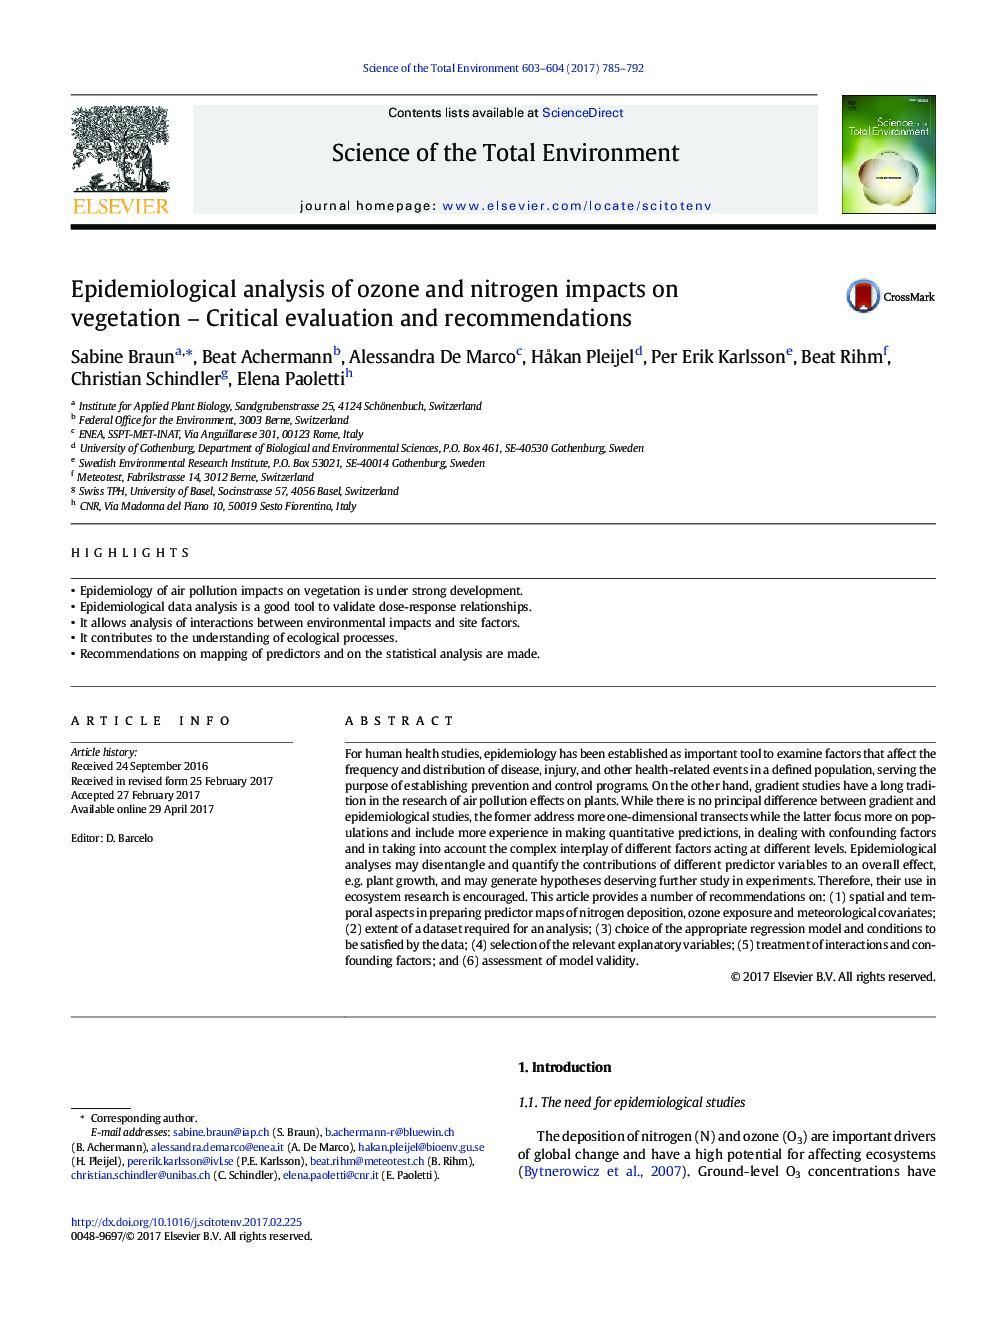 تجزیه و تحلیل اپیدمیولوژیک اثرات ازن و نیتروژن بر روی گیاهان - ارزیابی و توصیه های انتقادی 